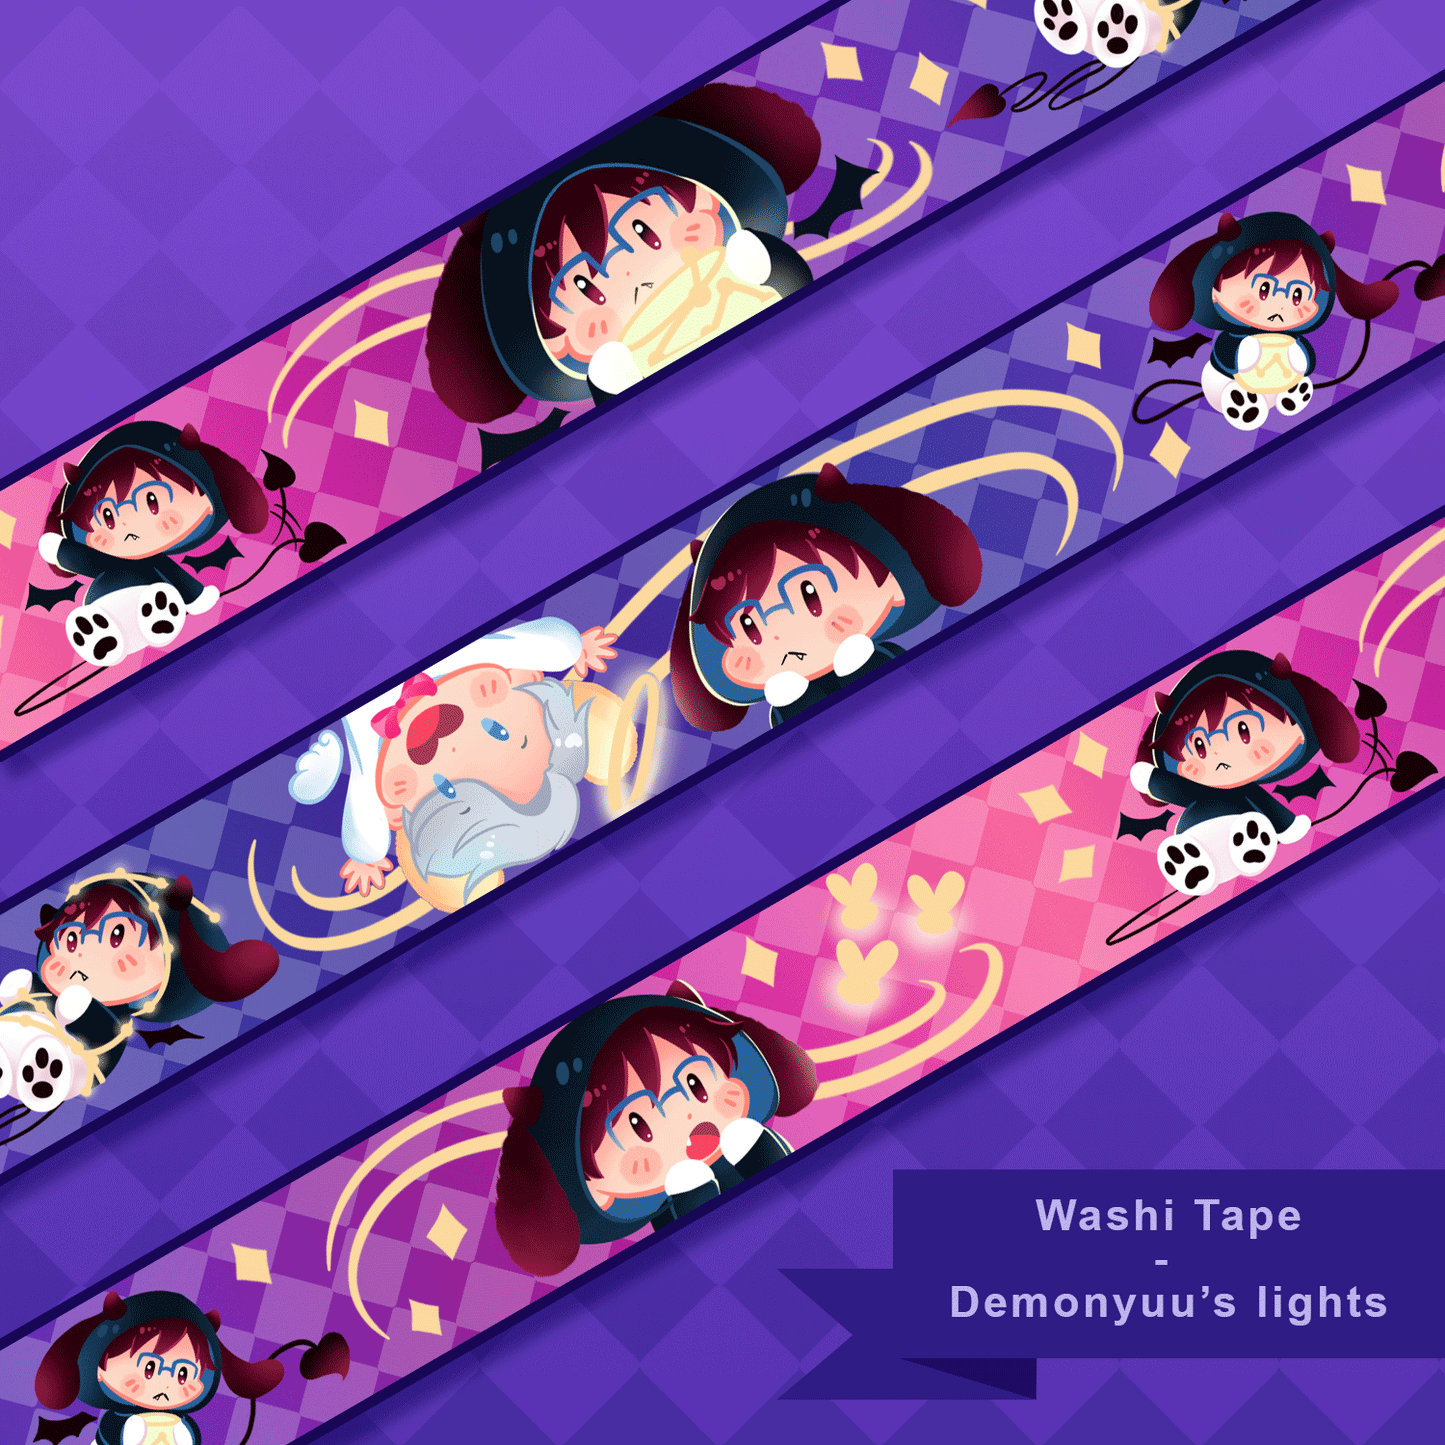 [Yuri!!! on Ice] Demonyuu's lights - Washi tape